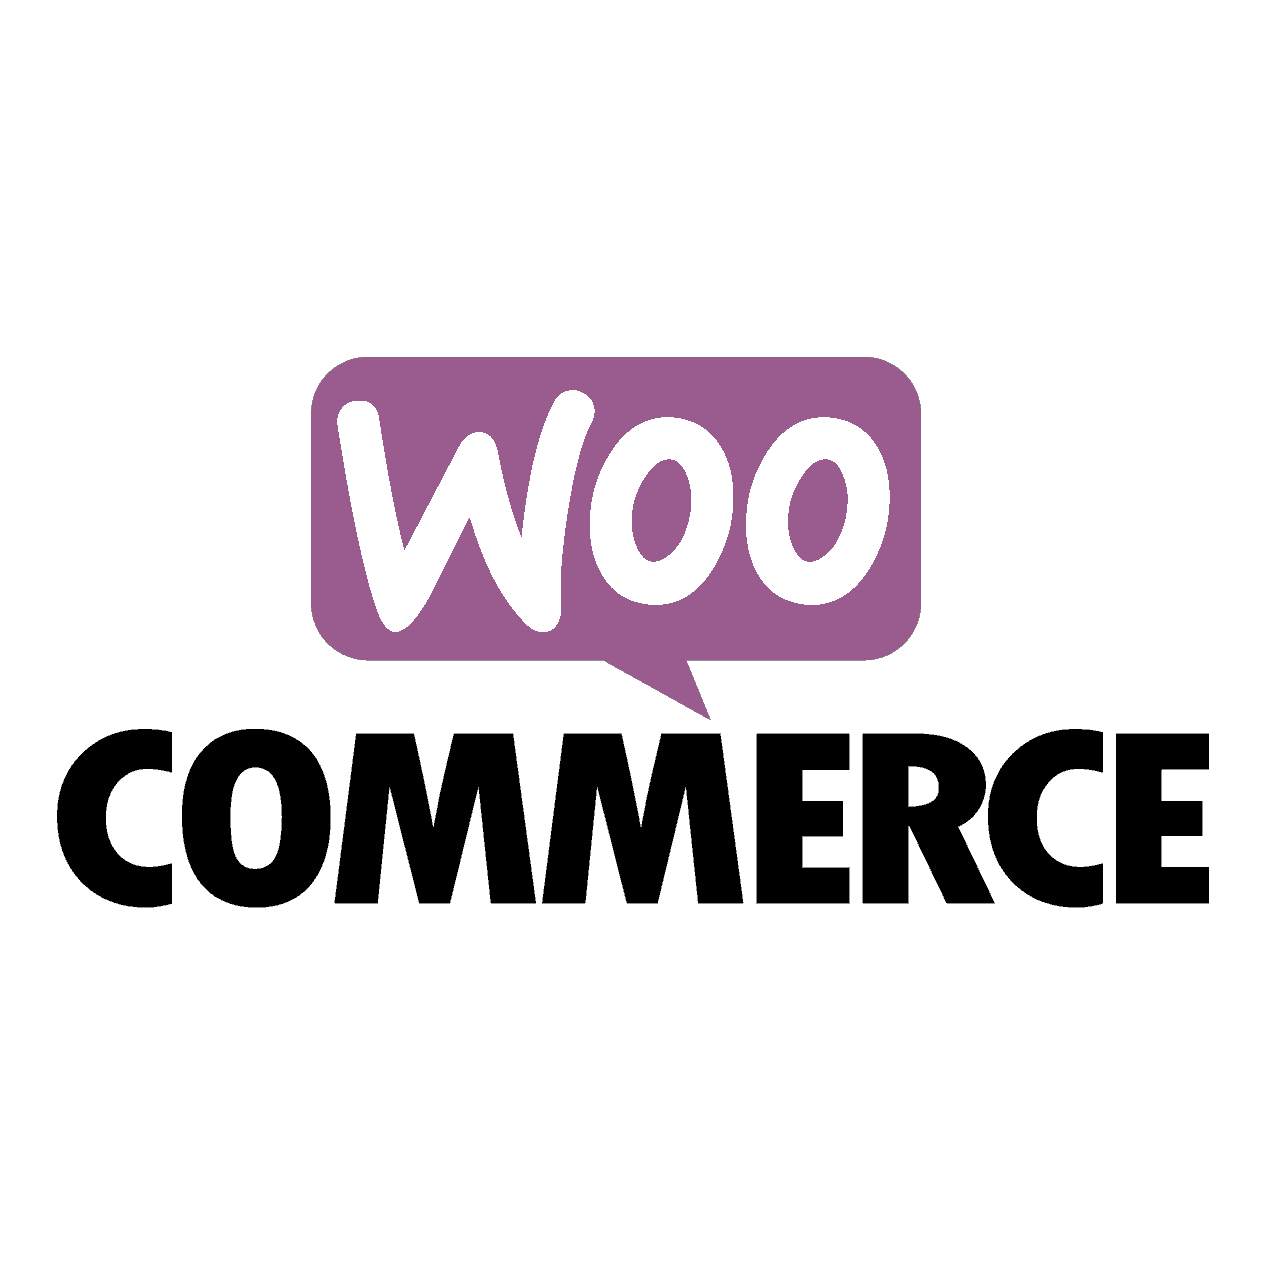 WooCommerce, czyli sklep internetowy na WordPress